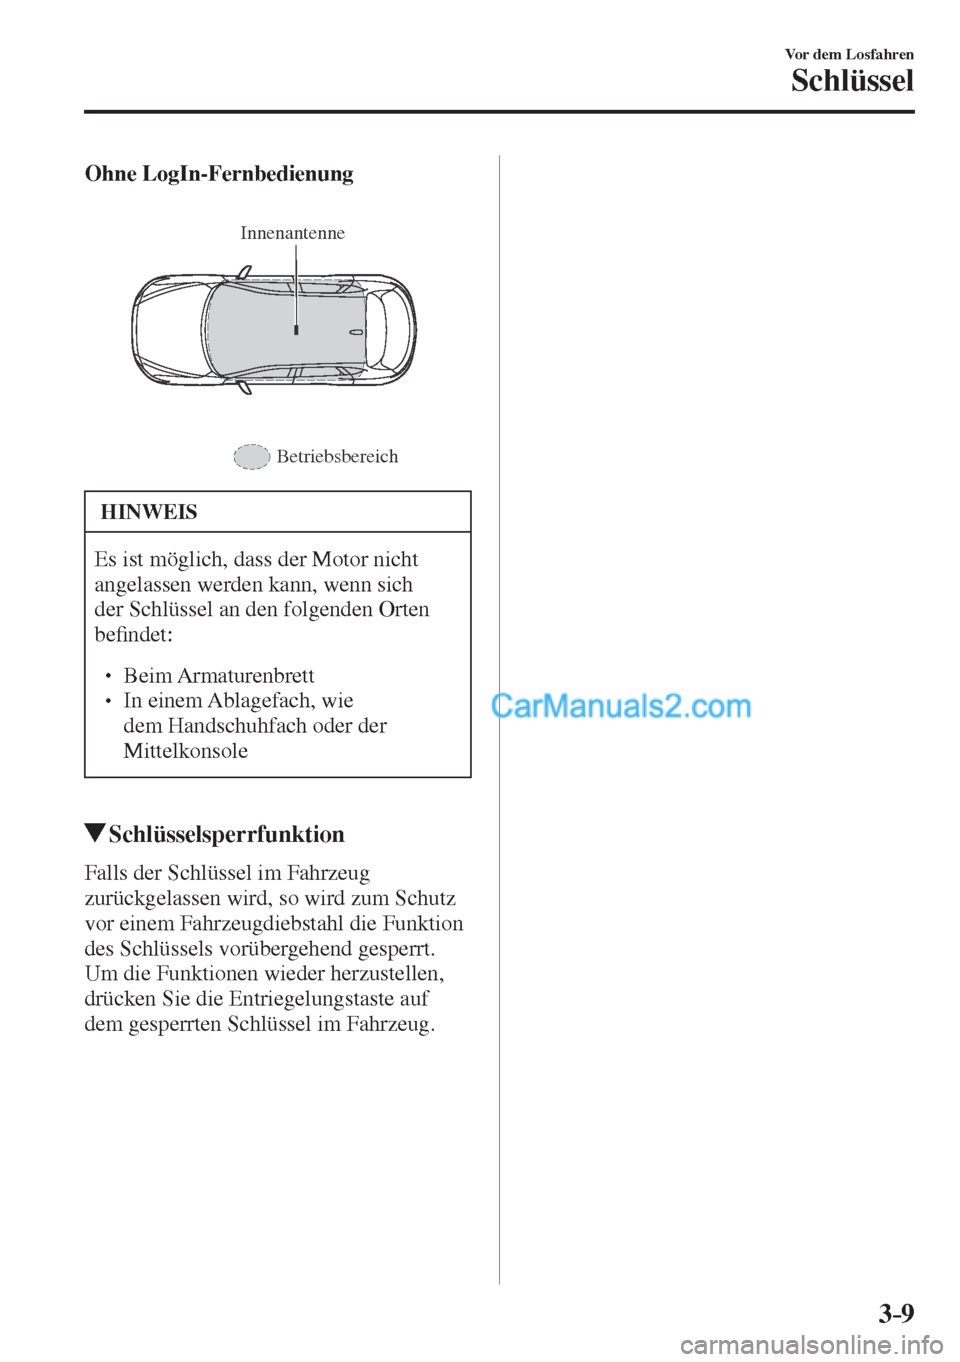 MAZDA MODEL CX-5 2017  Betriebsanleitung (in German) 3–9
Vor dem Losfahren
Schlüssel
    Ohne LogIn-Fernbedienung 
  
 
Innenantenne
Betriebsbereich
 
 HINWEIS
 Es ist möglich, dass der Motor nicht 
angelassen werden kann, wenn sich 
der Schlüssel 